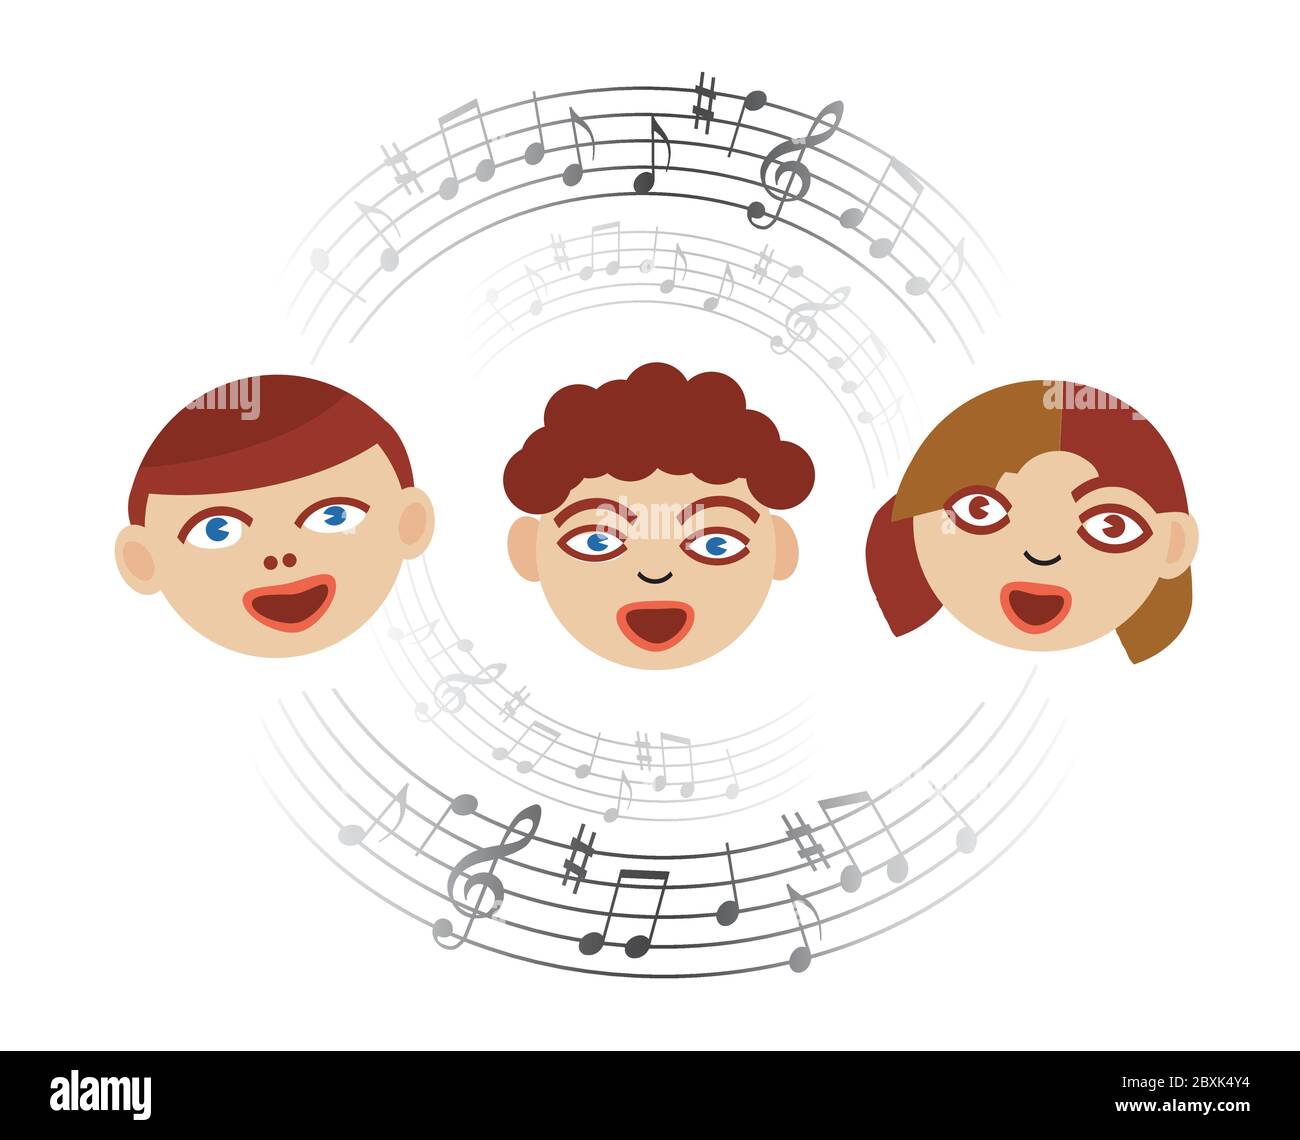 Trois enfants chantant avec des notes musicales. Illustration stylisée du chœur d'enfants avec cercle de notes musicales. Isolé sur fond blanc. Illustration de Vecteur